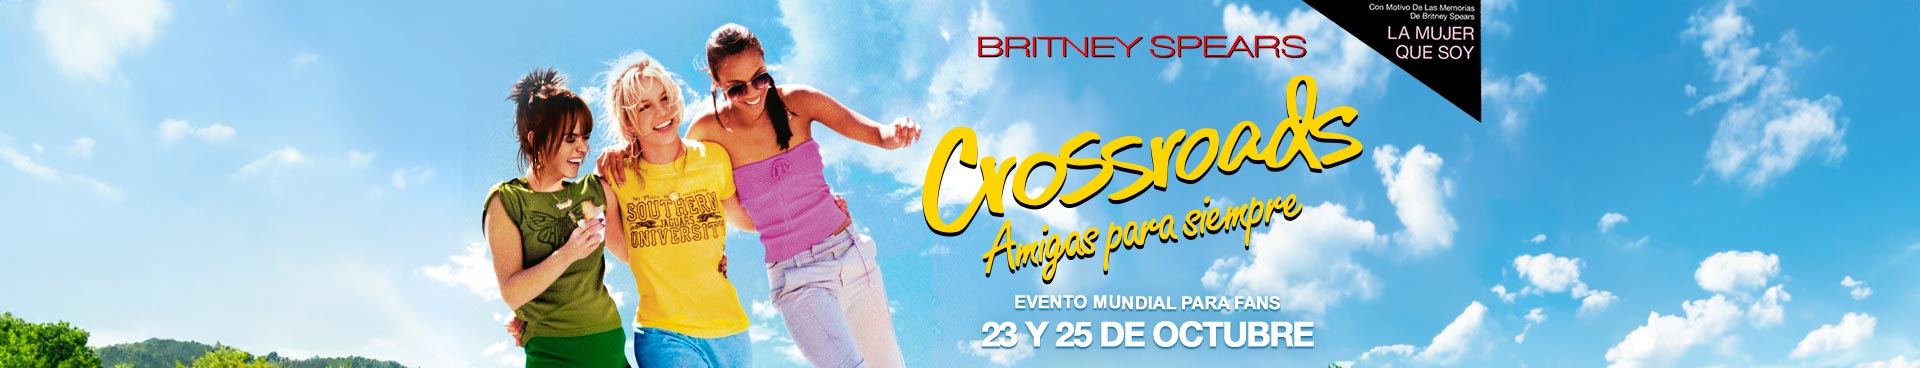 Britney spears crossroads global fan event